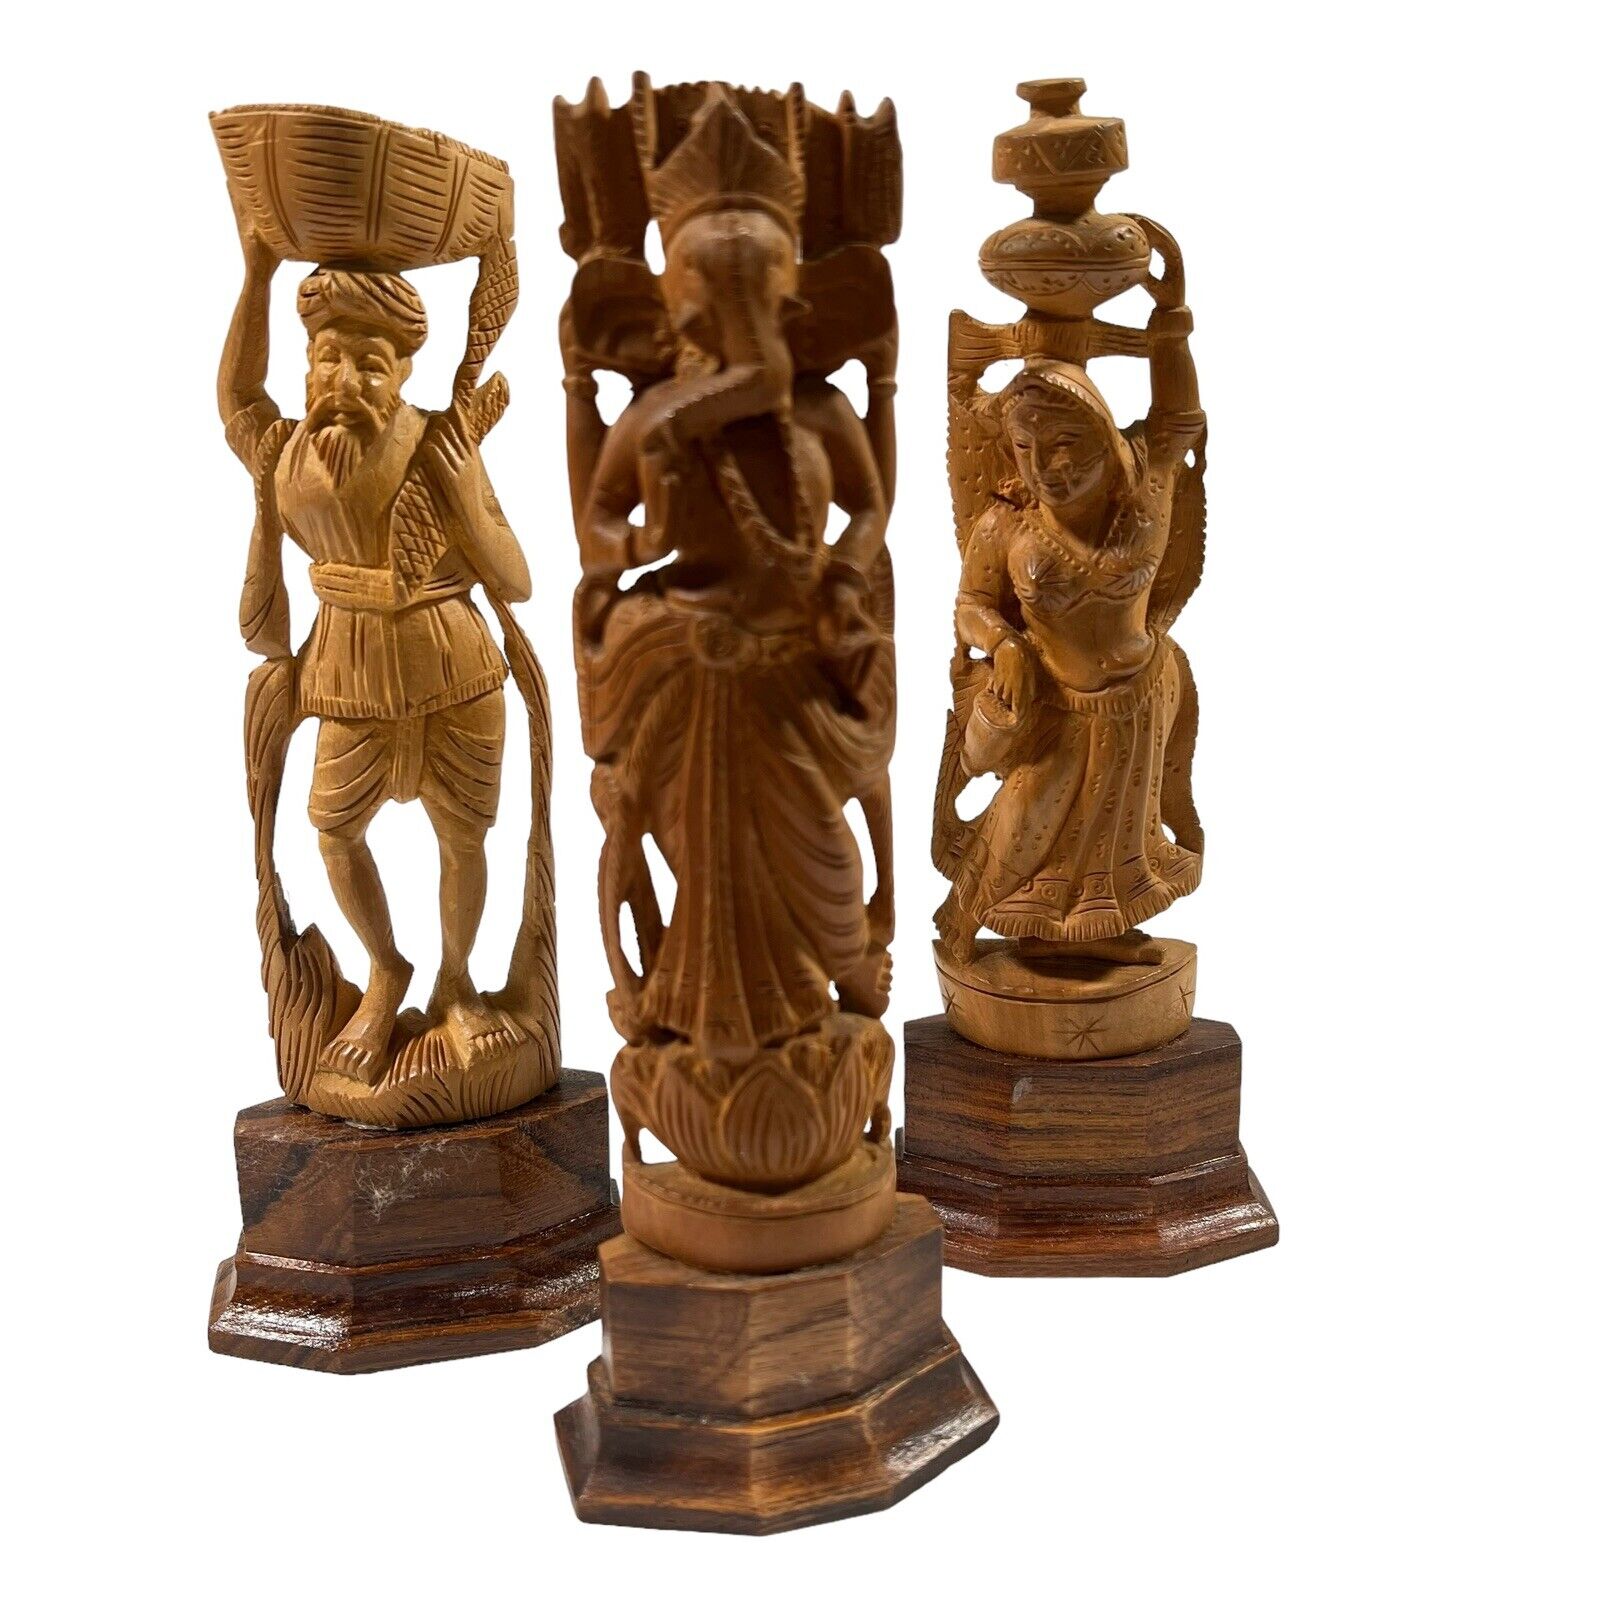 Vintage Asian/Hindu Carved Wooden Statue Figurine Carved Art Gods